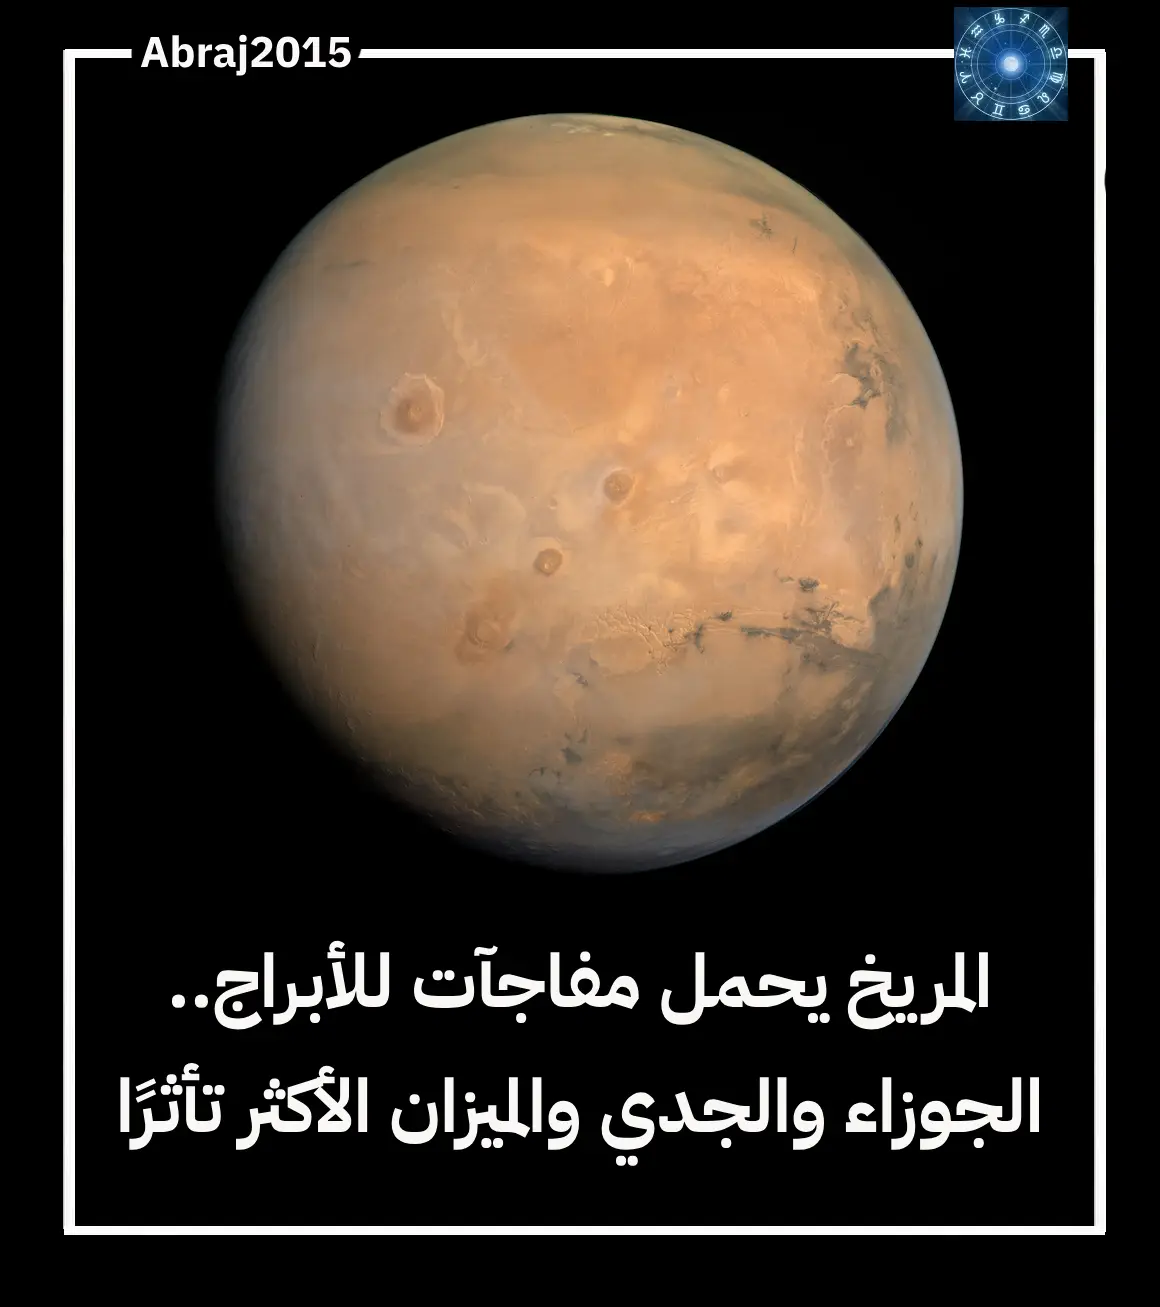 المريخ يحمل مفاجآت للأبراج.. الجوزاء والجدي والميزان الأكثر تأثرًا